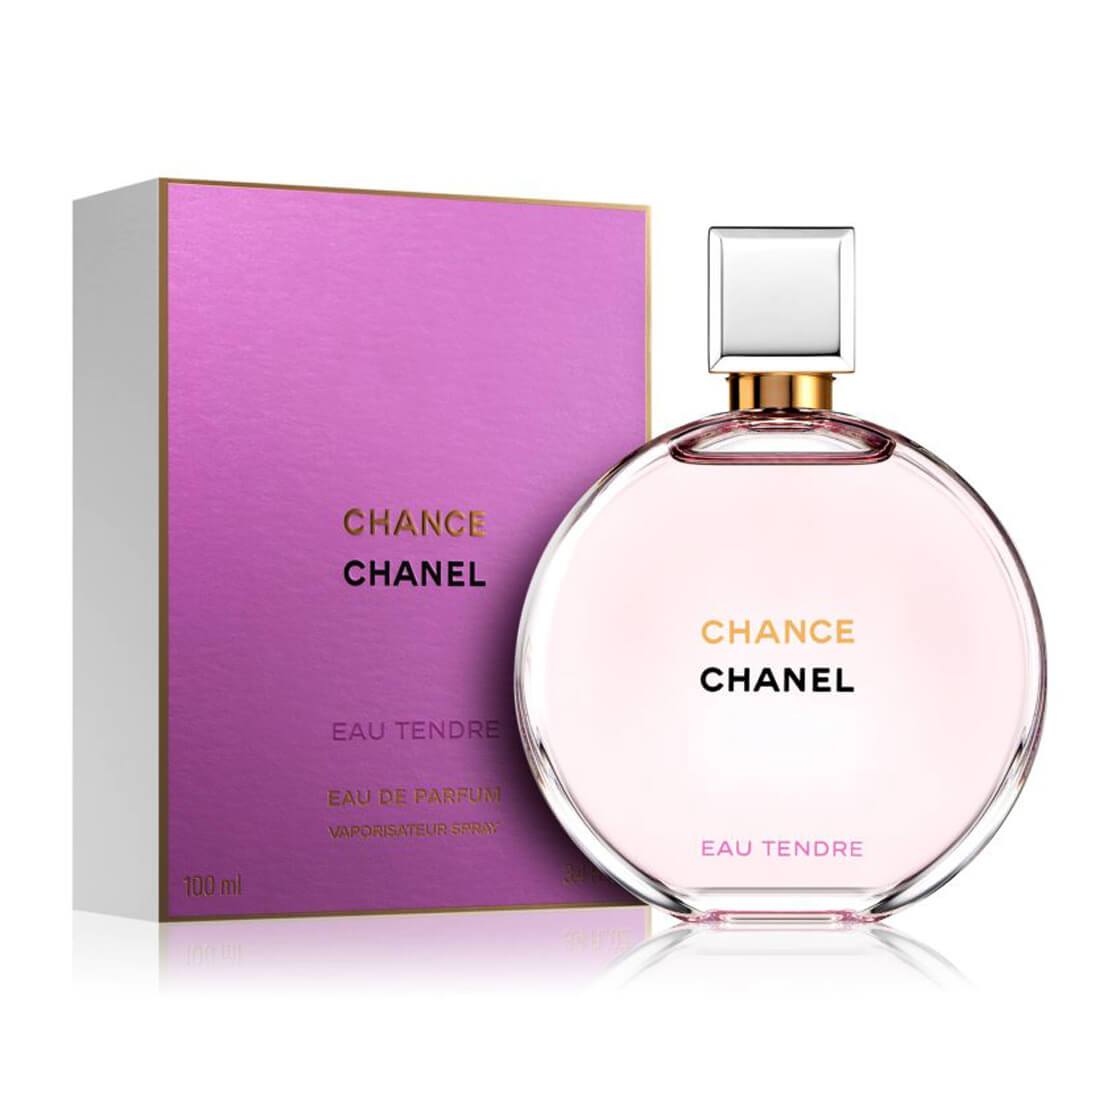 CHANEL CHANCE Eau Tendre Perfume  CHANEL